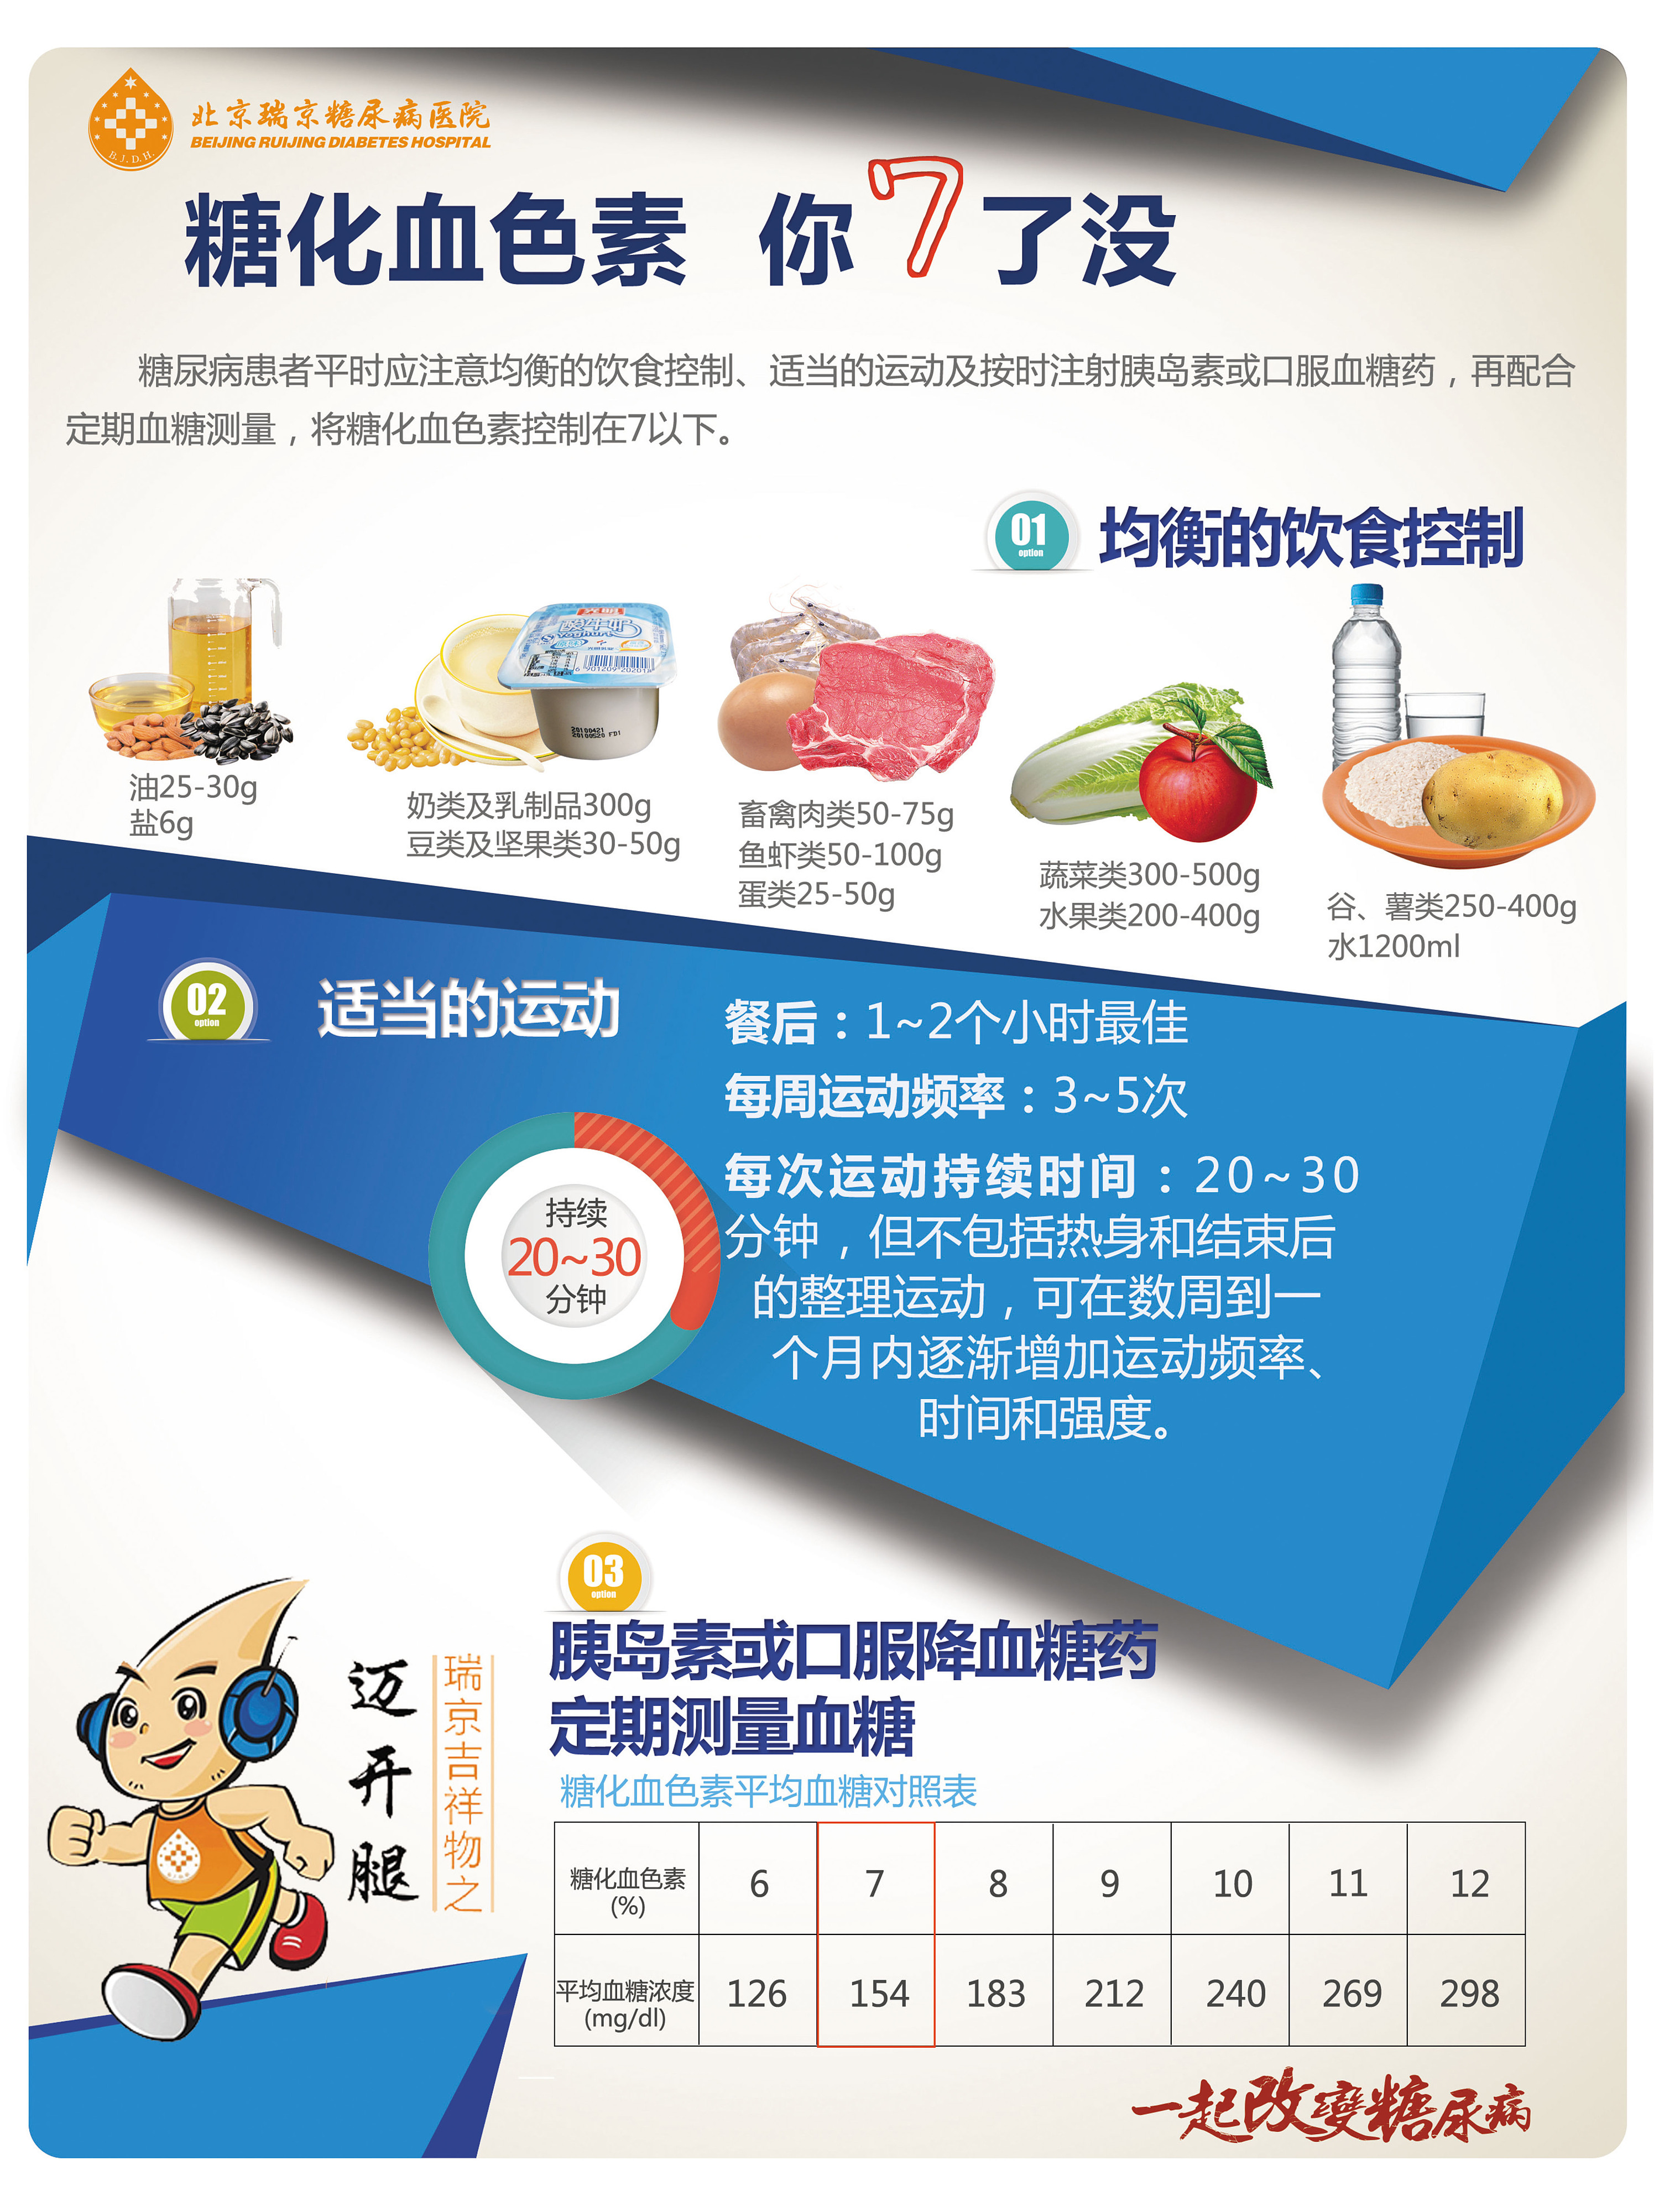 最全的糖尿病饮食清单，不看会后悔！ - 欢迎访问强生血糖仪稳捷ONE TOUCH中国官方网站